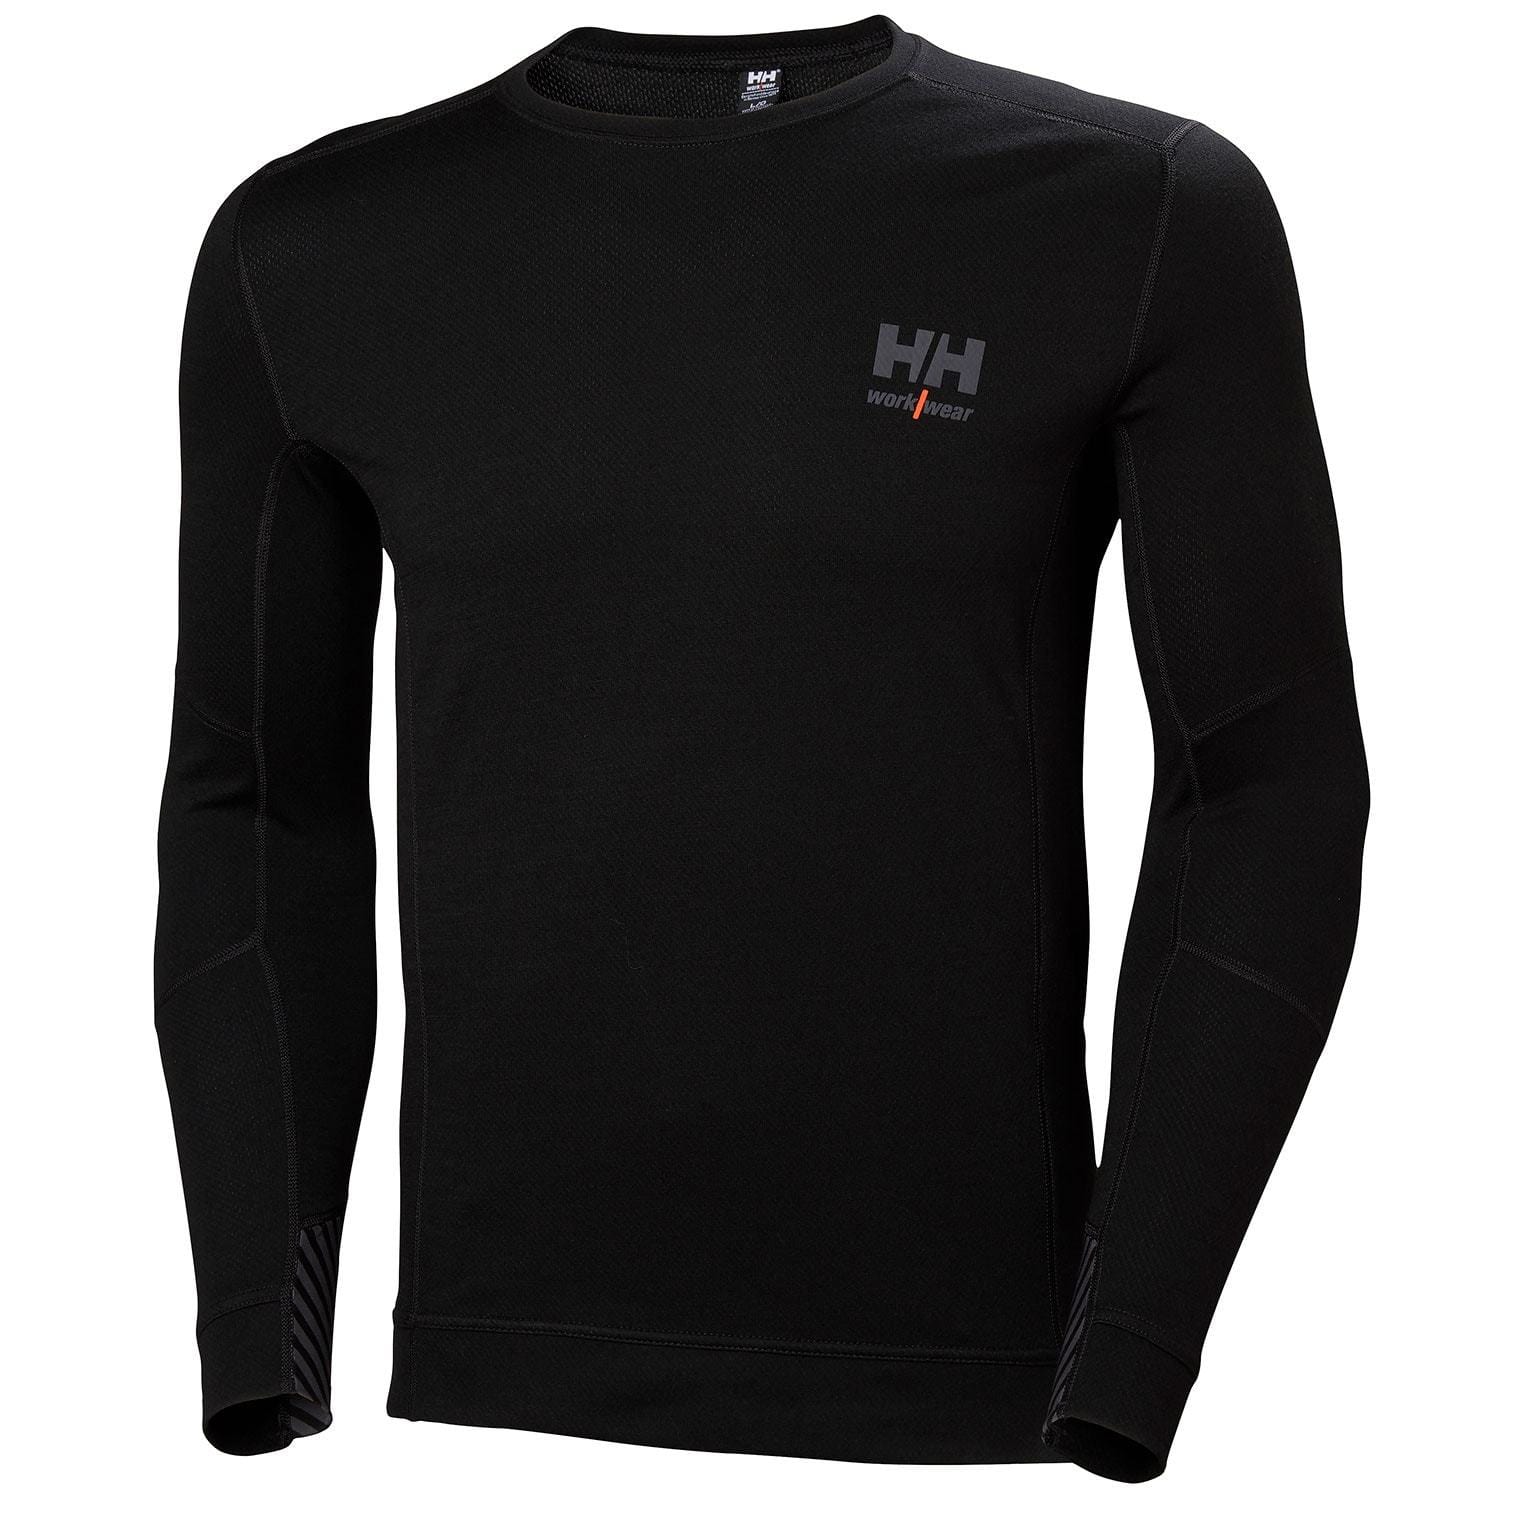 Helly Hansen Workwear T-shirts S / Black Helly Hansen Workwear - Men's Lifa Merino Crewneck